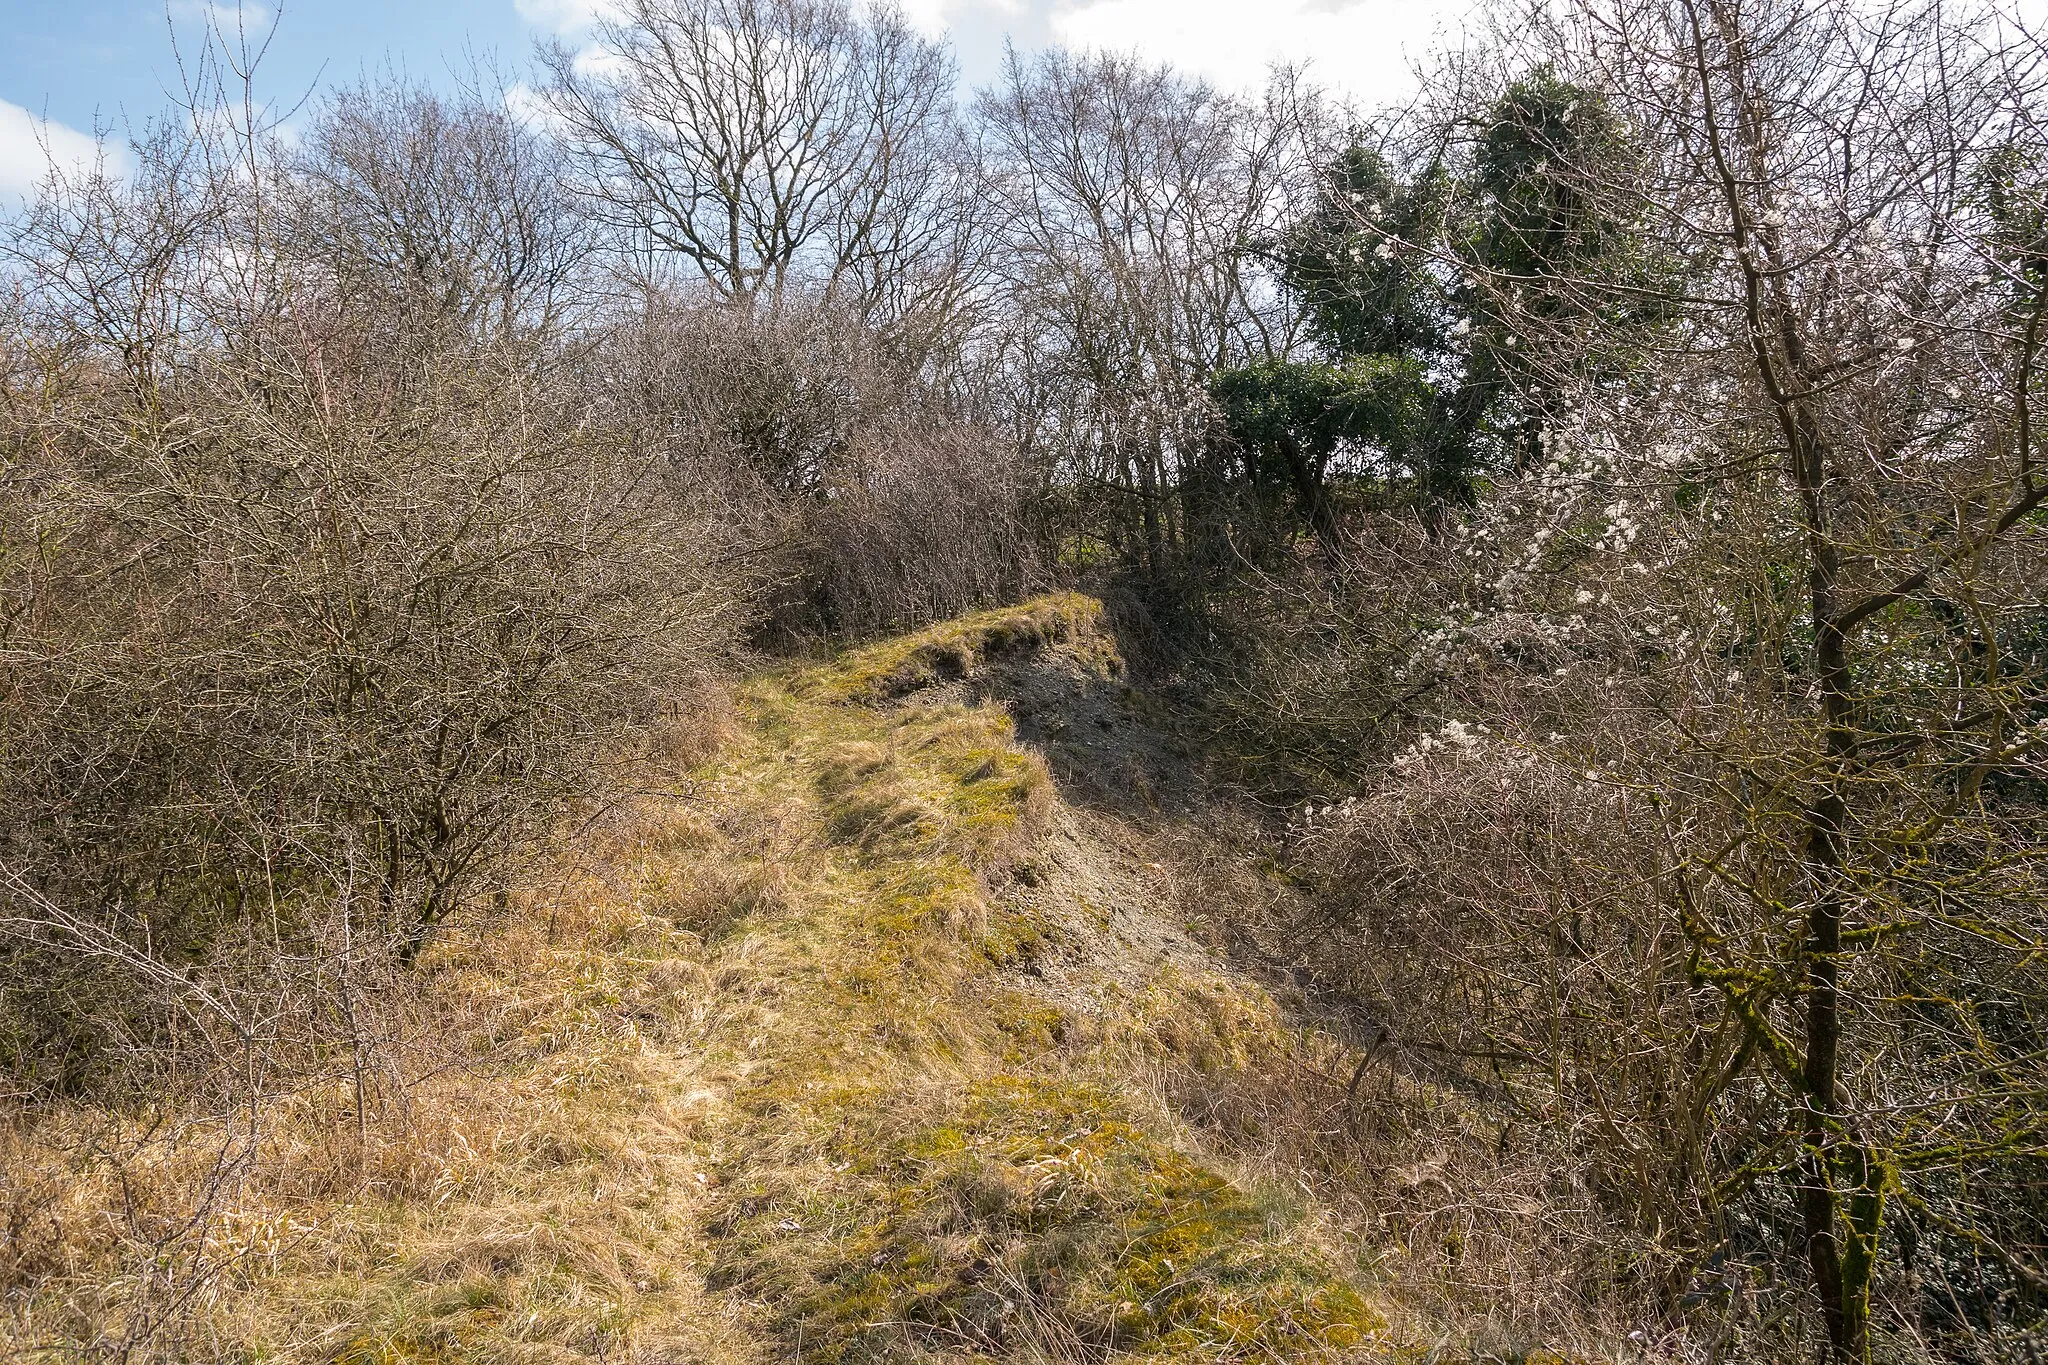 Photo showing: Naturdenkmal Mergelkuhle und gesetzlich geschütztes Biotop Kalkmagerrasen am Trophagener Berg, Lemgo, Kreis Lippe